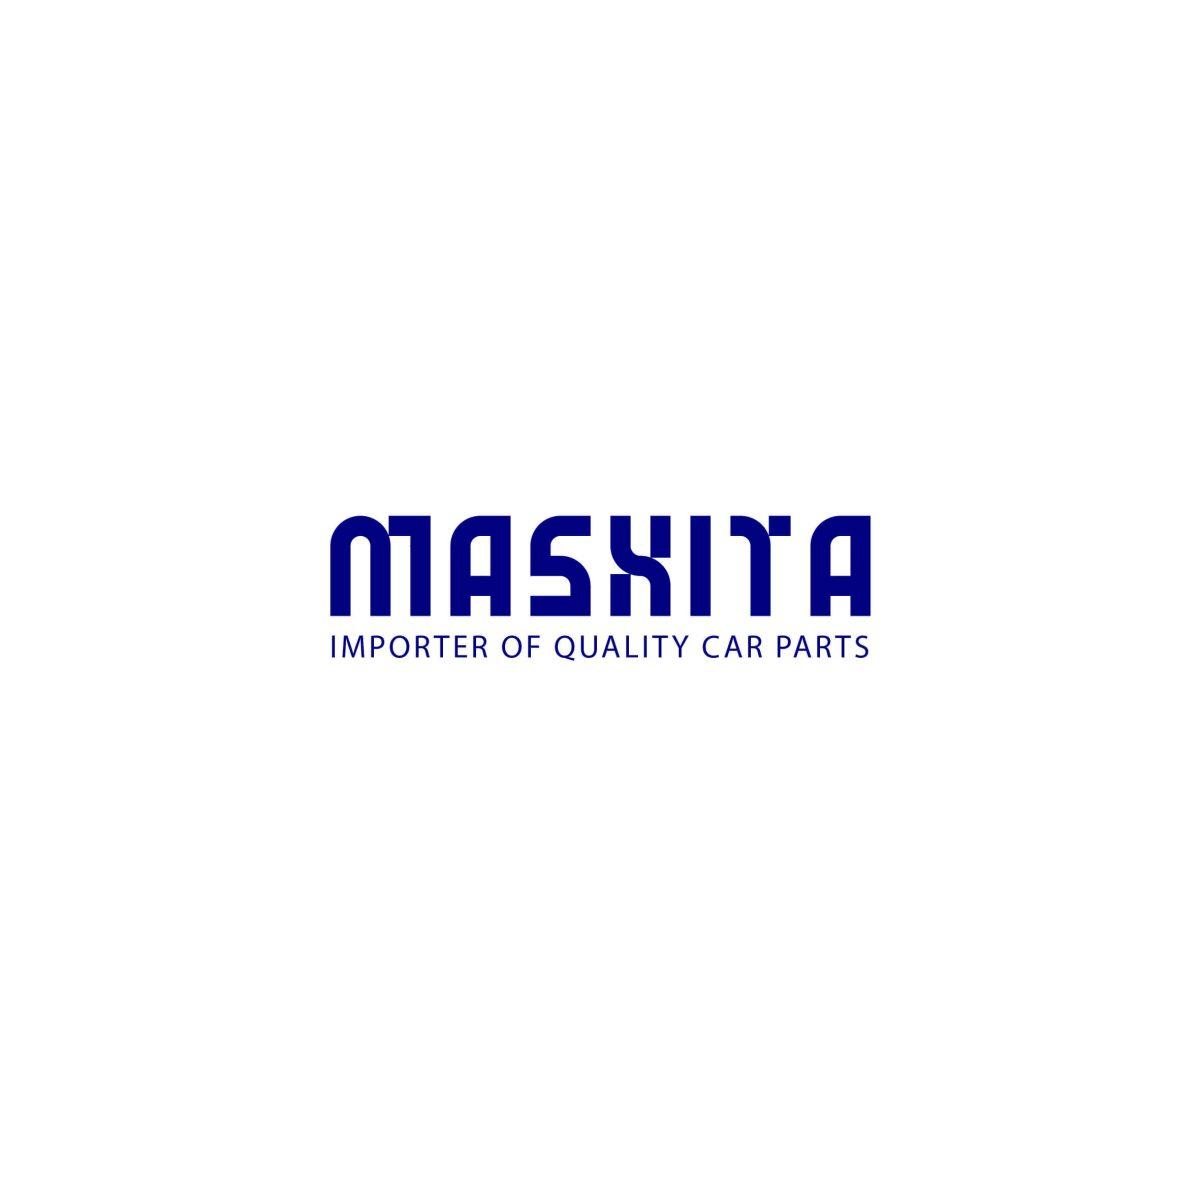 طراحی لوگو MASHITA